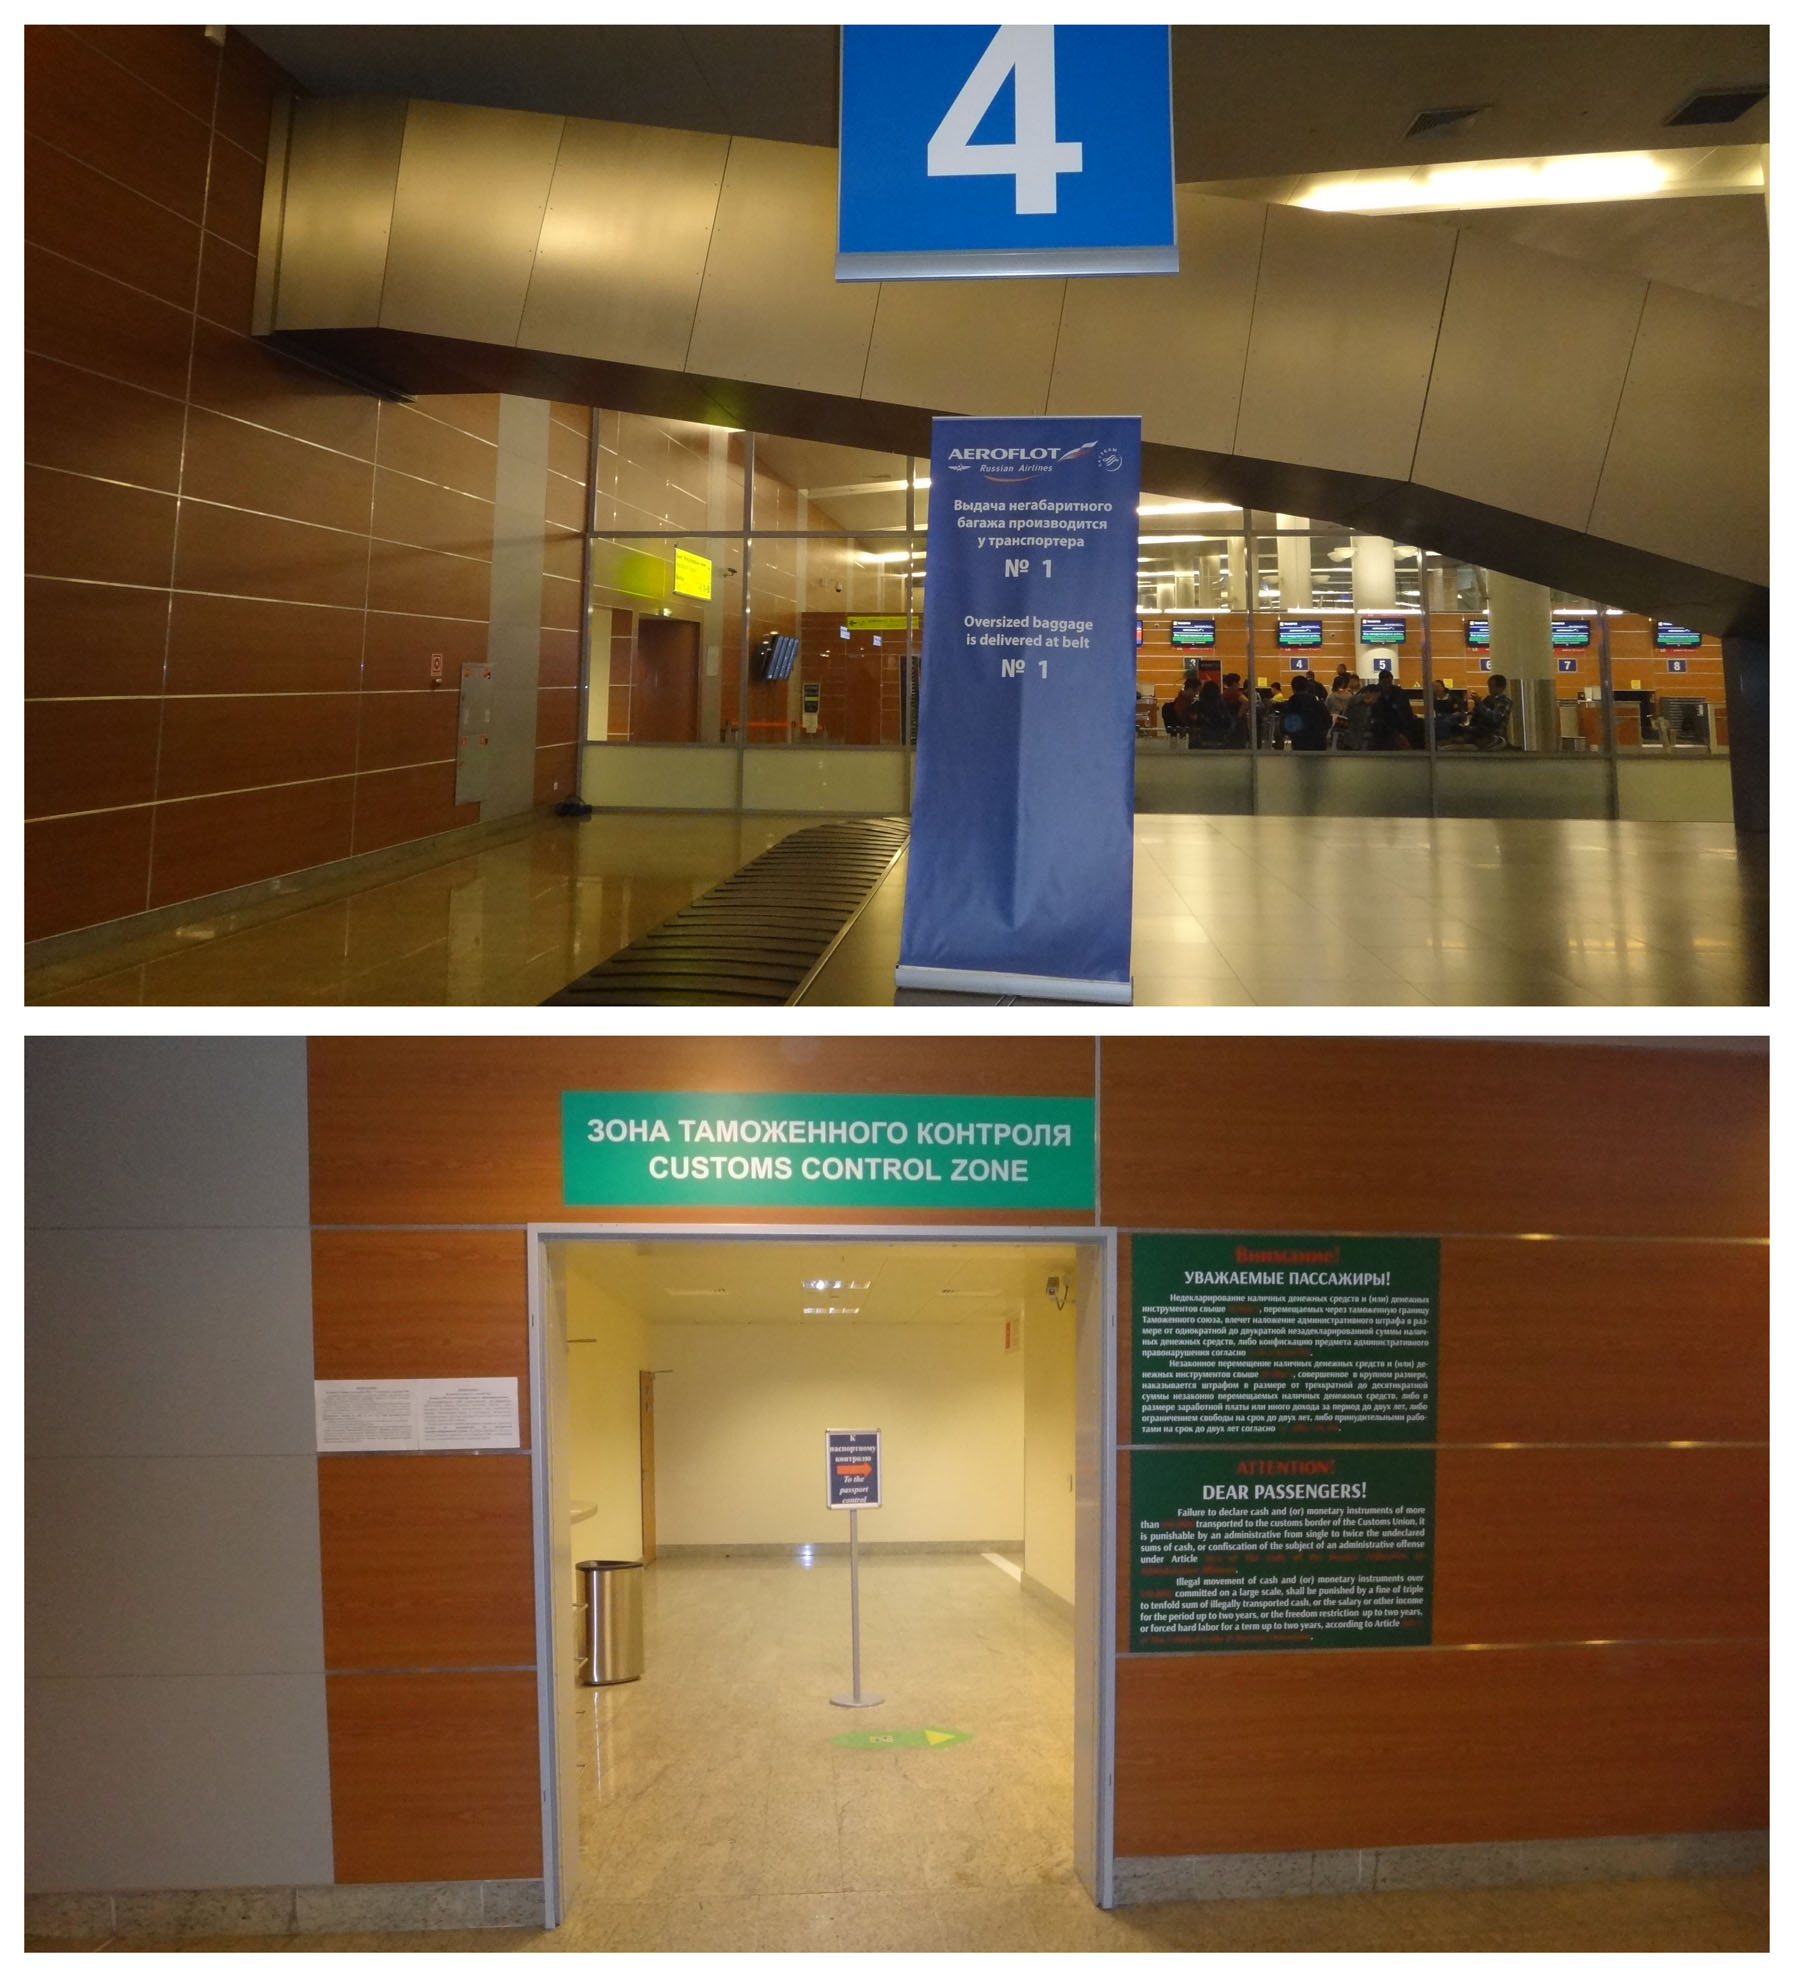 Шереметьево находки. Паспортный контроль Шереметьево терминал d. Автоматический паспортный контроль в Шереметьево терминал с. Терминал c Шереметьево паспортный контроль. Зона таможенного контроля Шереметьево.